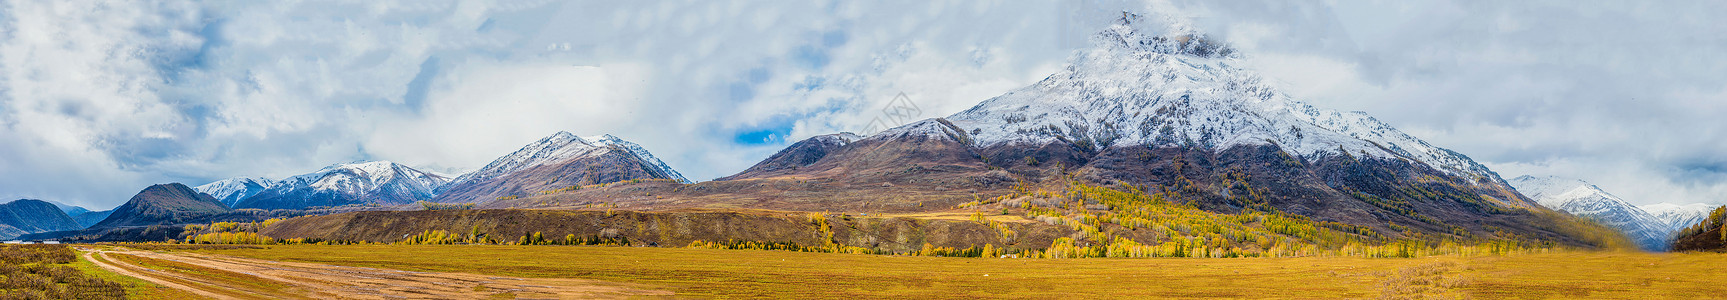 下雪全景素材北疆秋色雪山全景背景